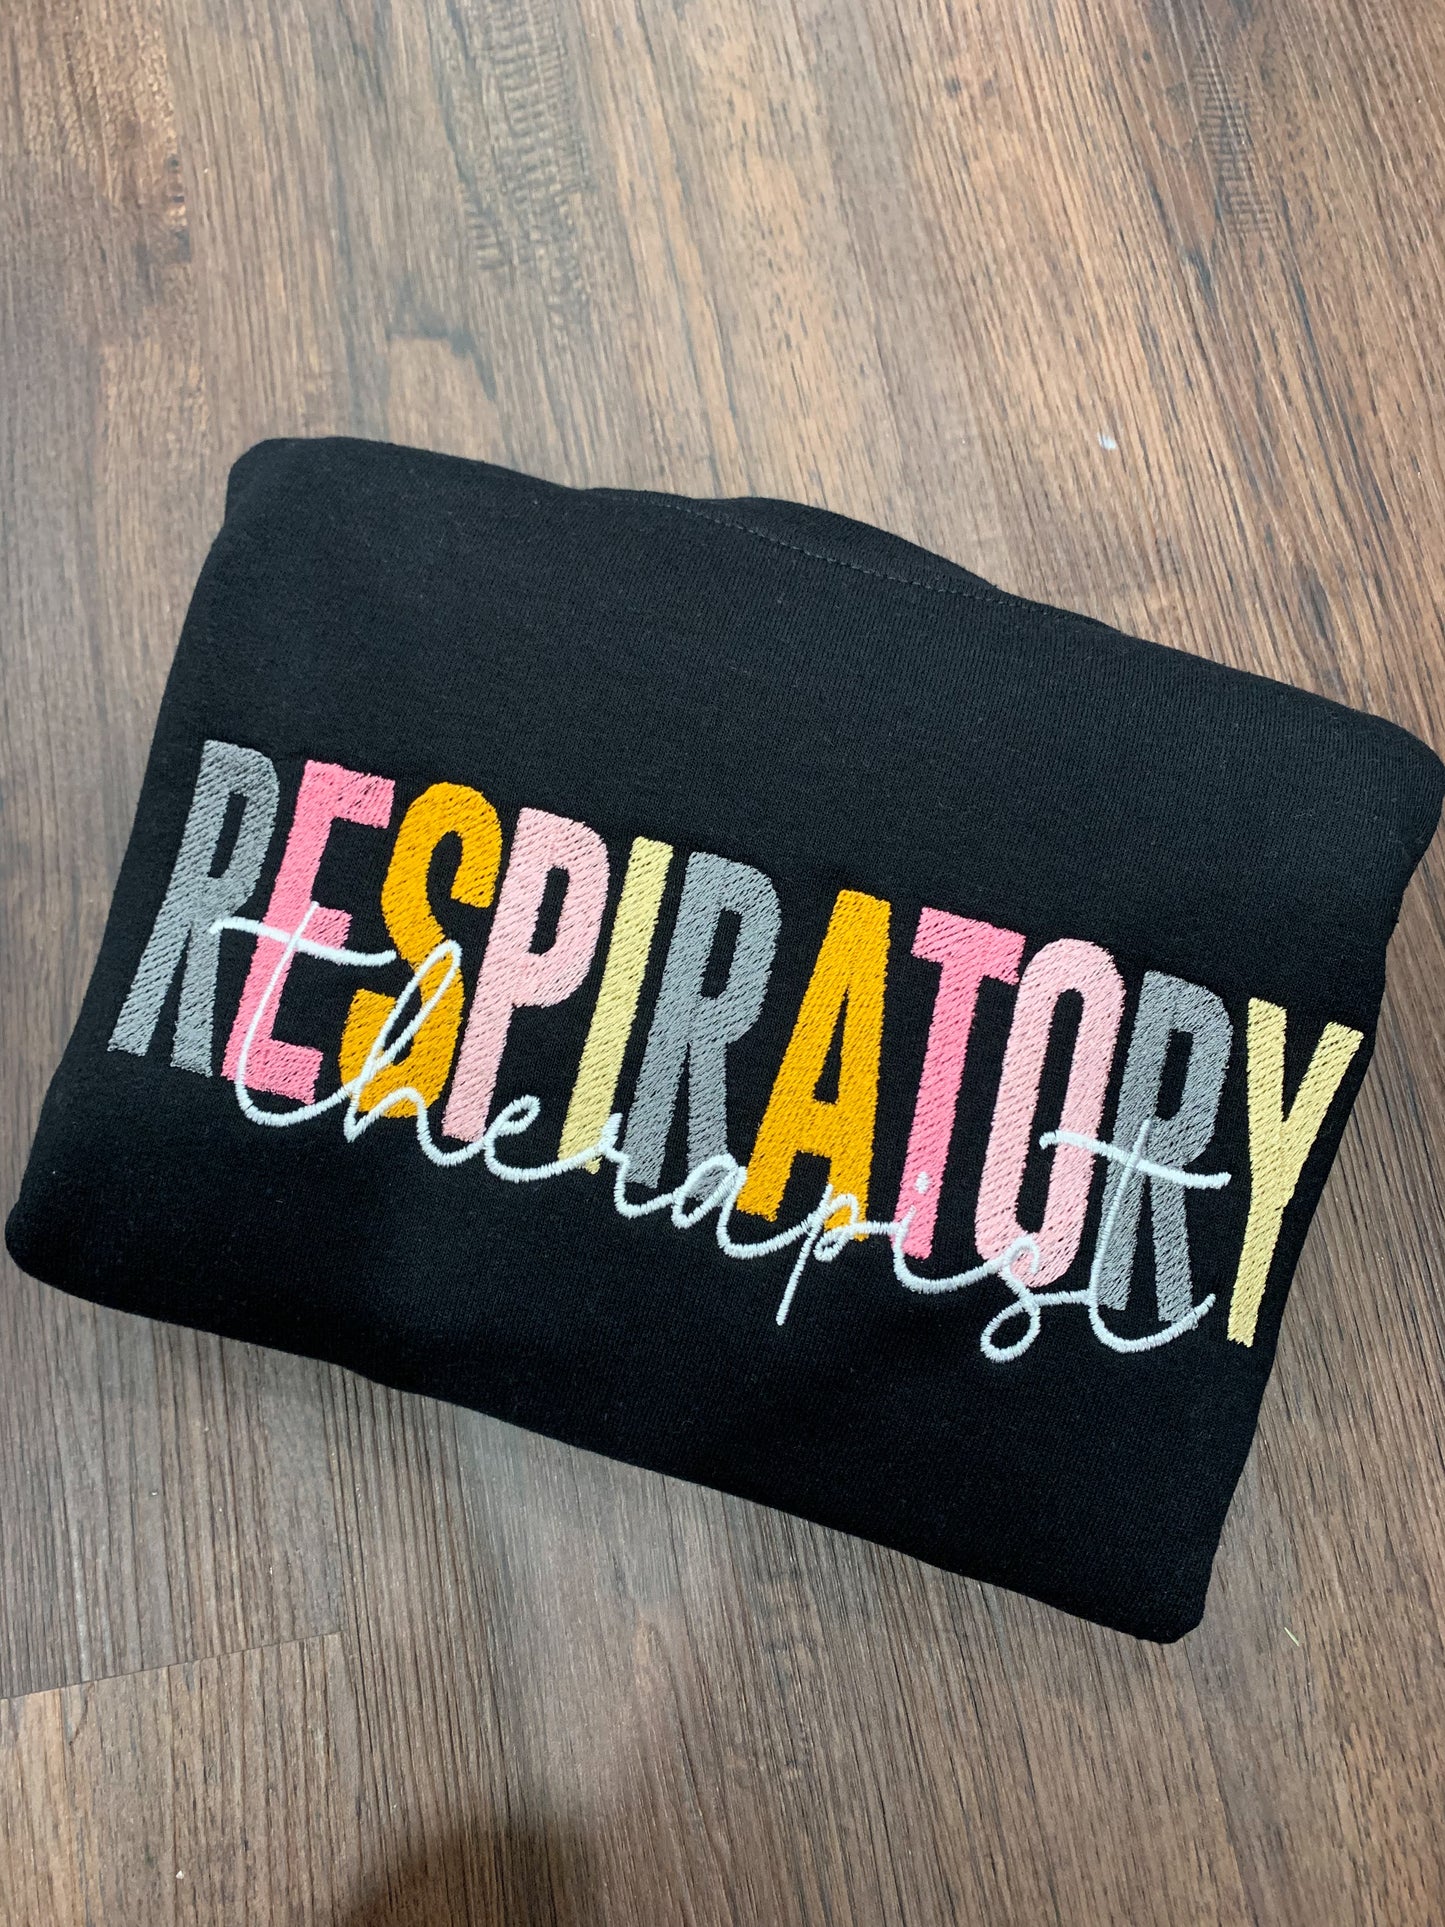 Respiratory therapist